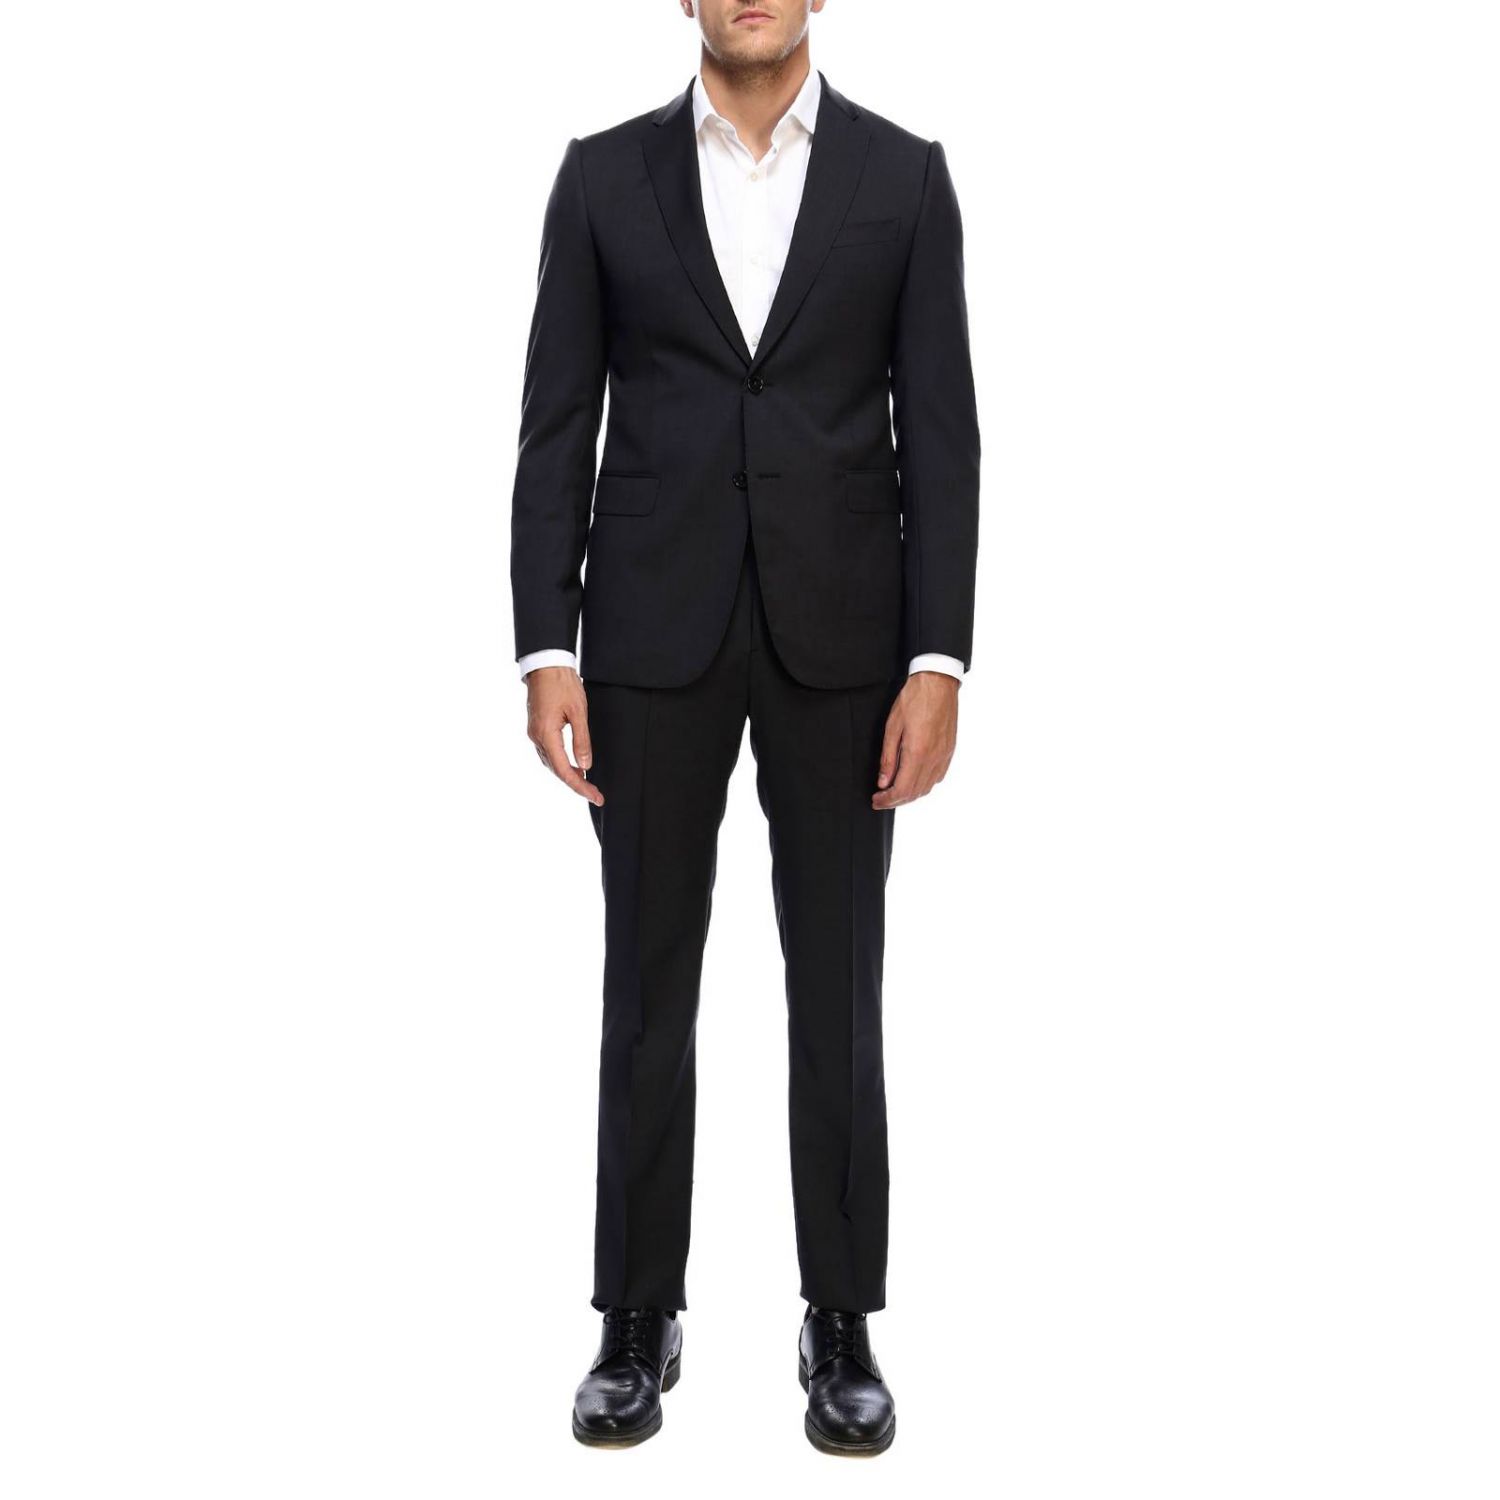 Emporio Armani Outlet: Suit men | Suit Emporio Armani Men Charcoal ...